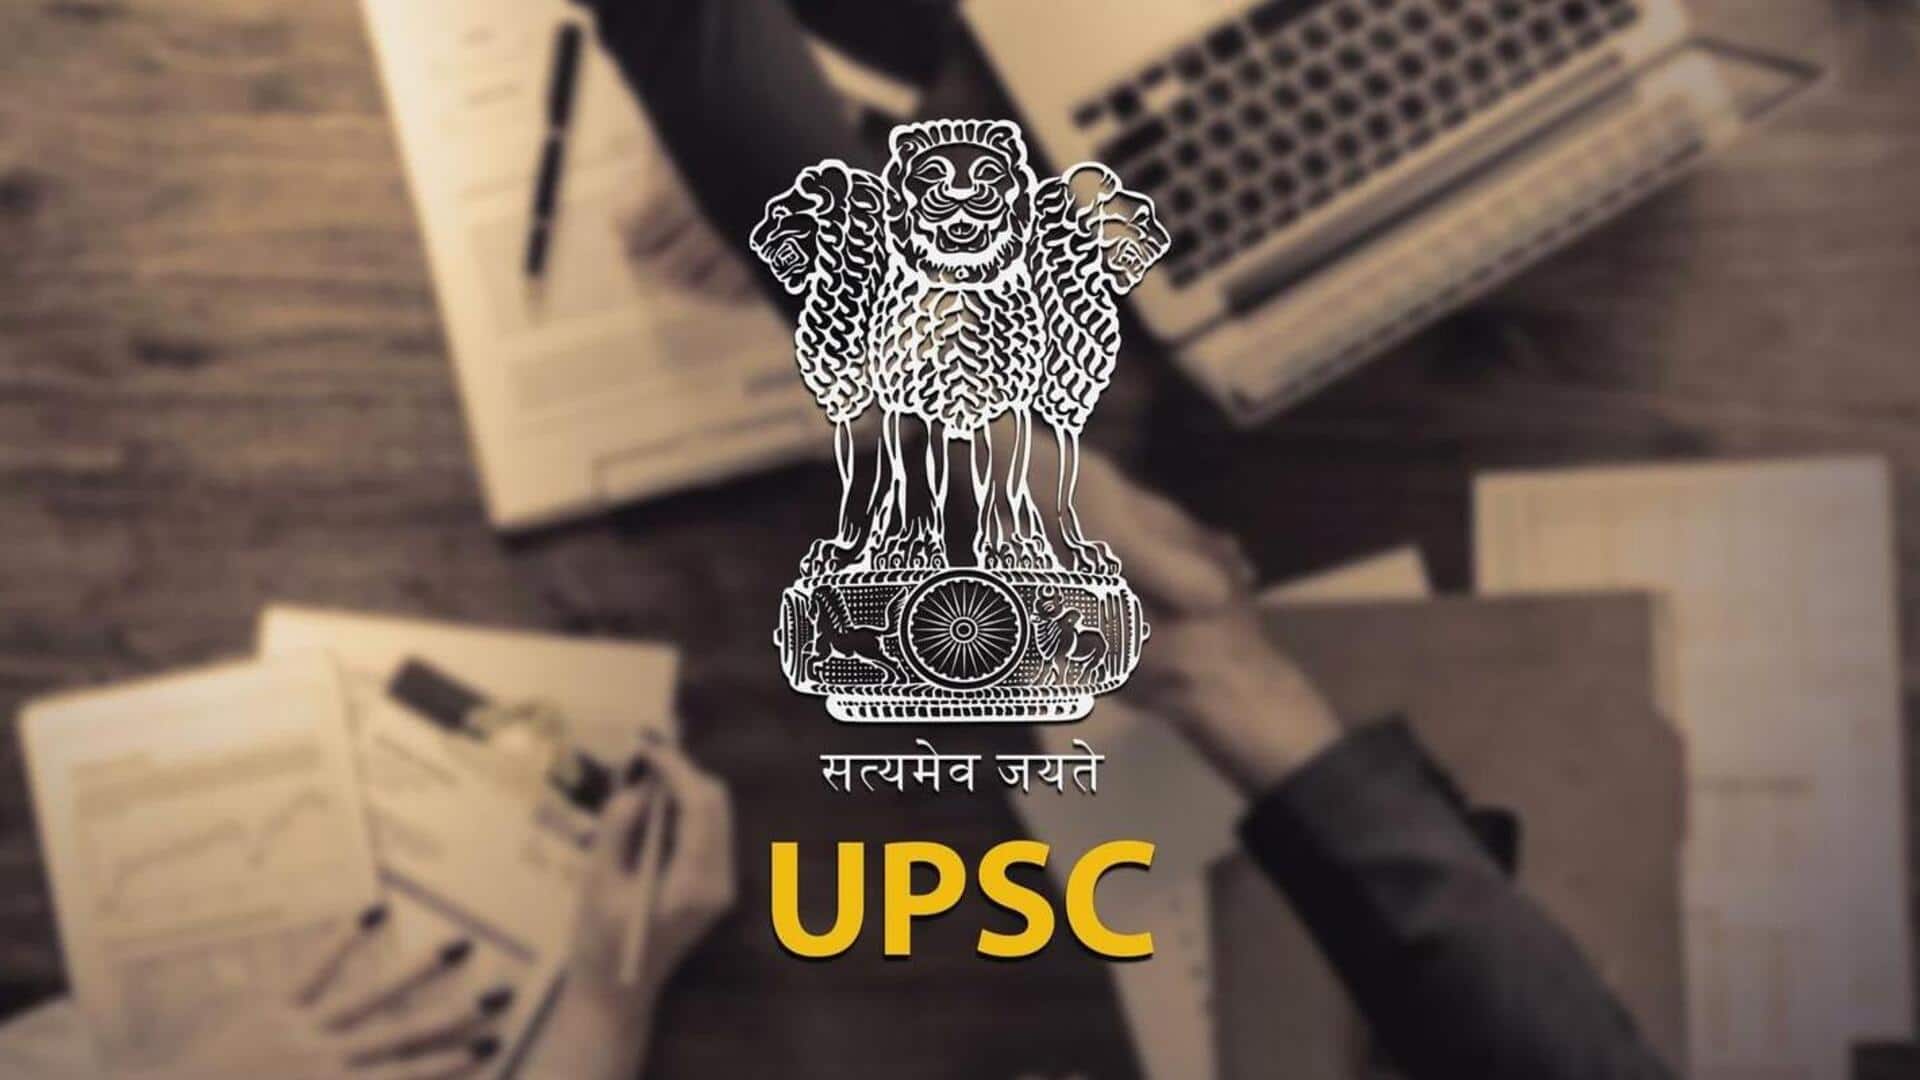 UPSC: आयशा नाम की 2 लड़कियों का 184वीं रैंक पर दावा, दोनों का अनुक्रमांक भी एक